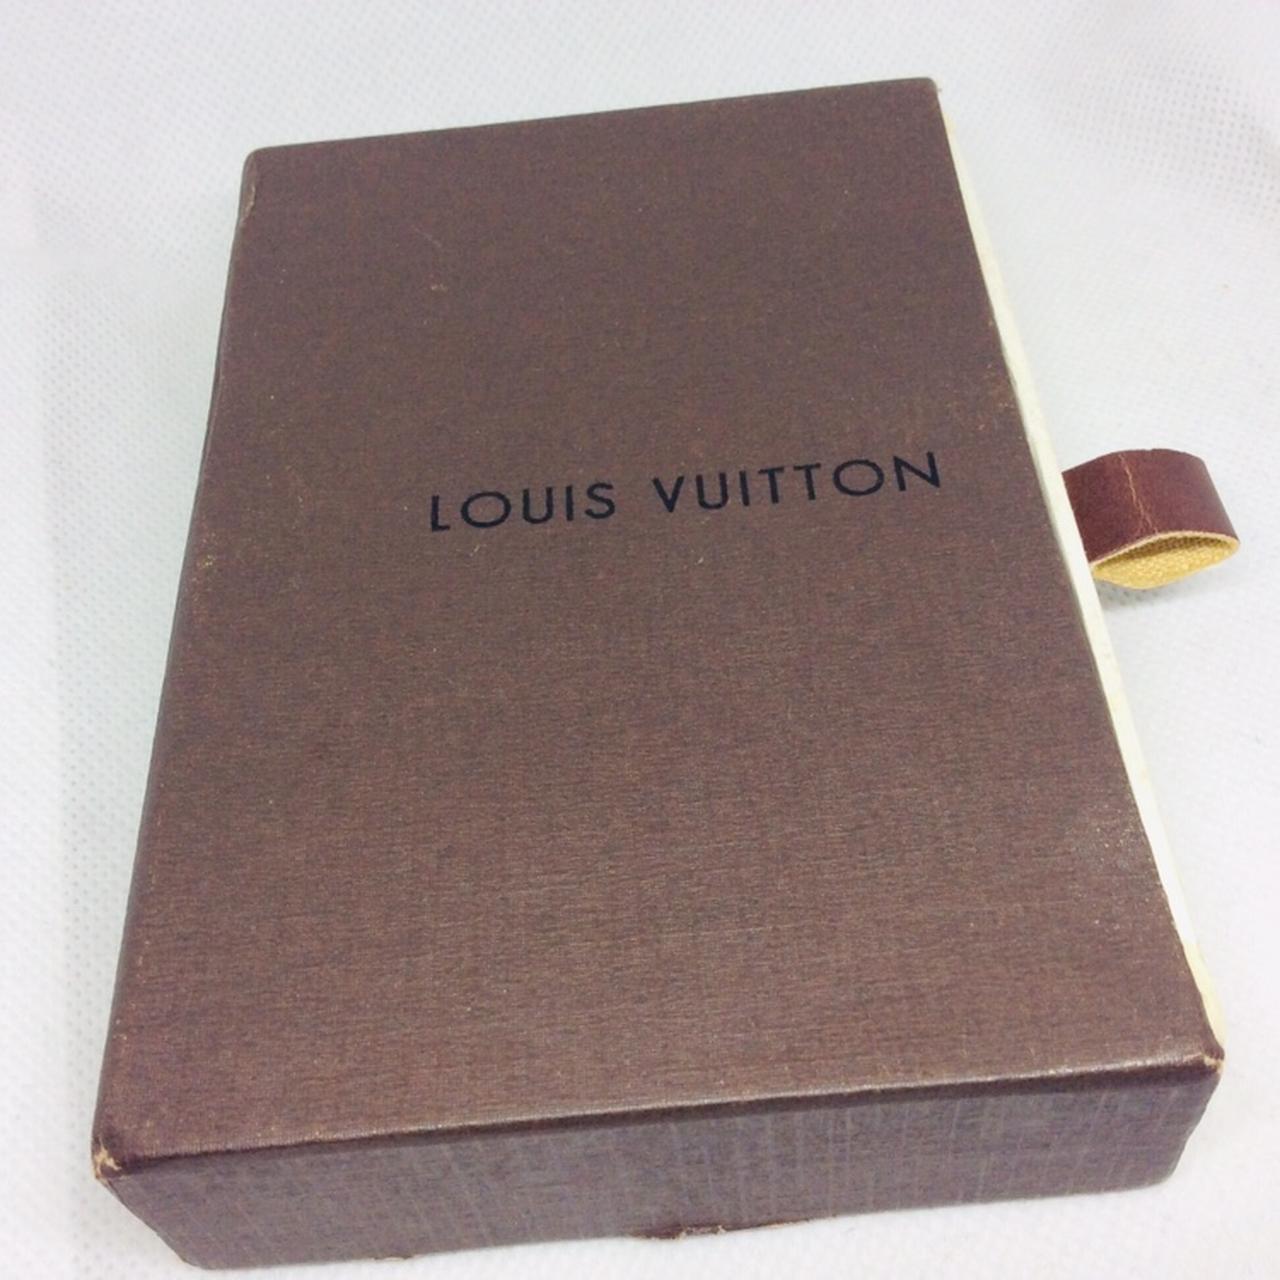 Louis Vuitton Box 14”W x 10 1/4”L x 4 3/4”T